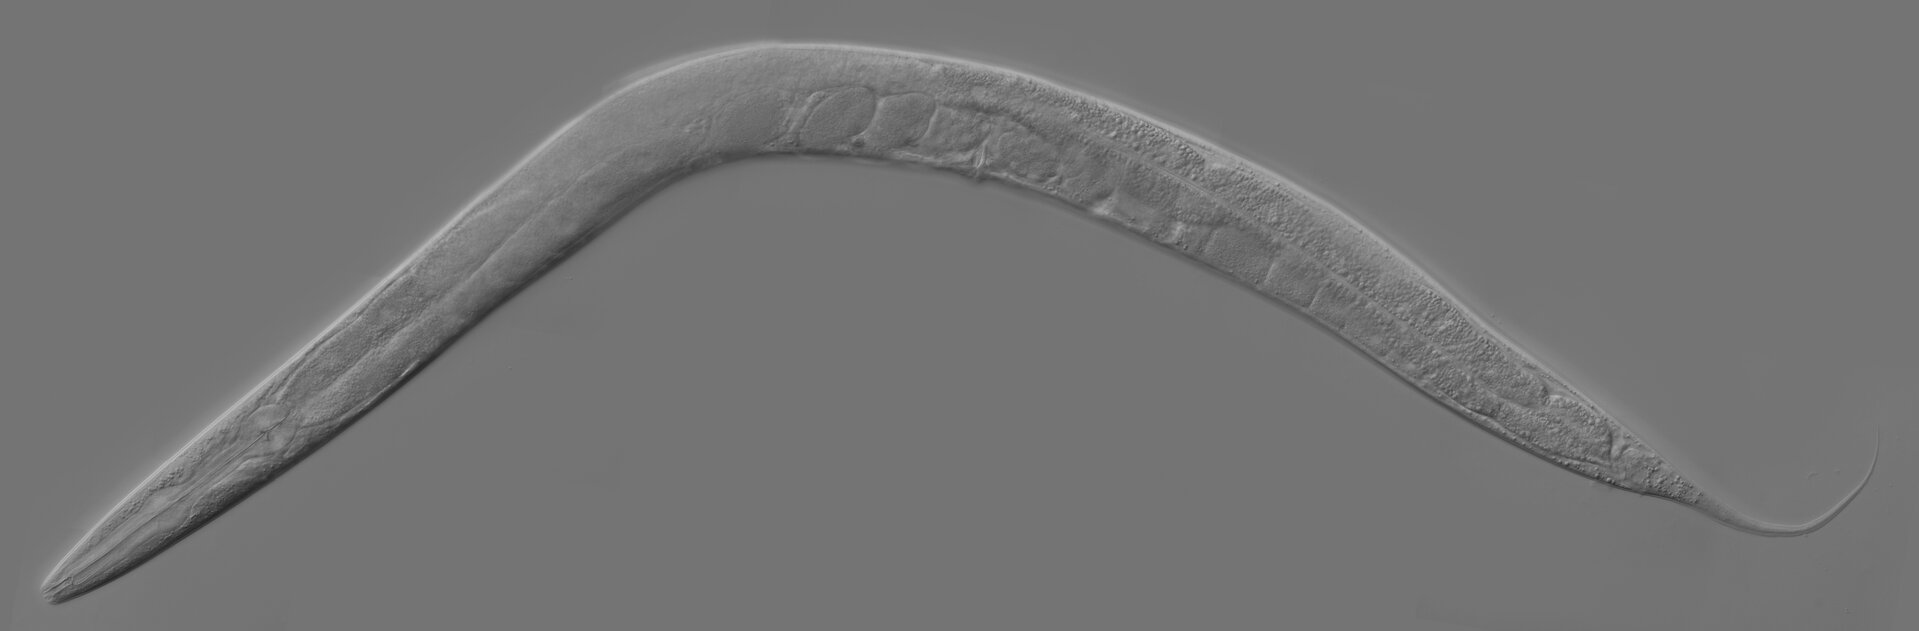 Fotografia mikroskopowa przedstawia na szarym tle wypukłego, szarego nicienia. Jest wygięty w łuk. Jego przednia część znajduje się w lewym dolnym rogu. To nicień wykorzystywany badaniach genetycznych.